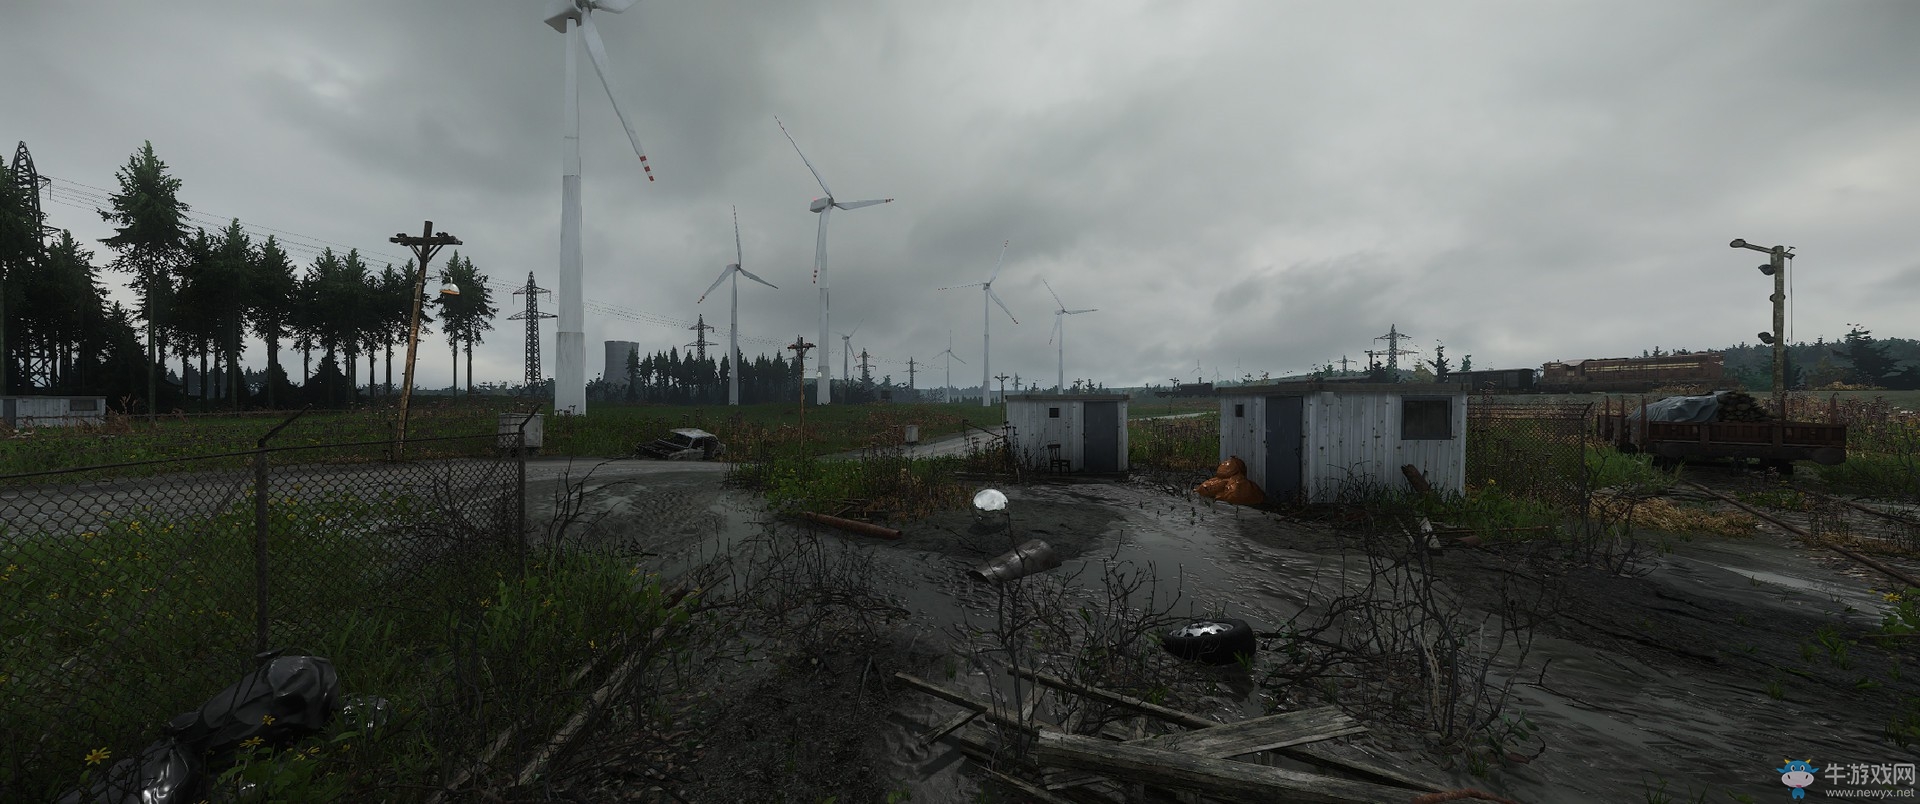 《孤岛危机》最新引擎渲染图曝光 这是照片还是游戏画面？